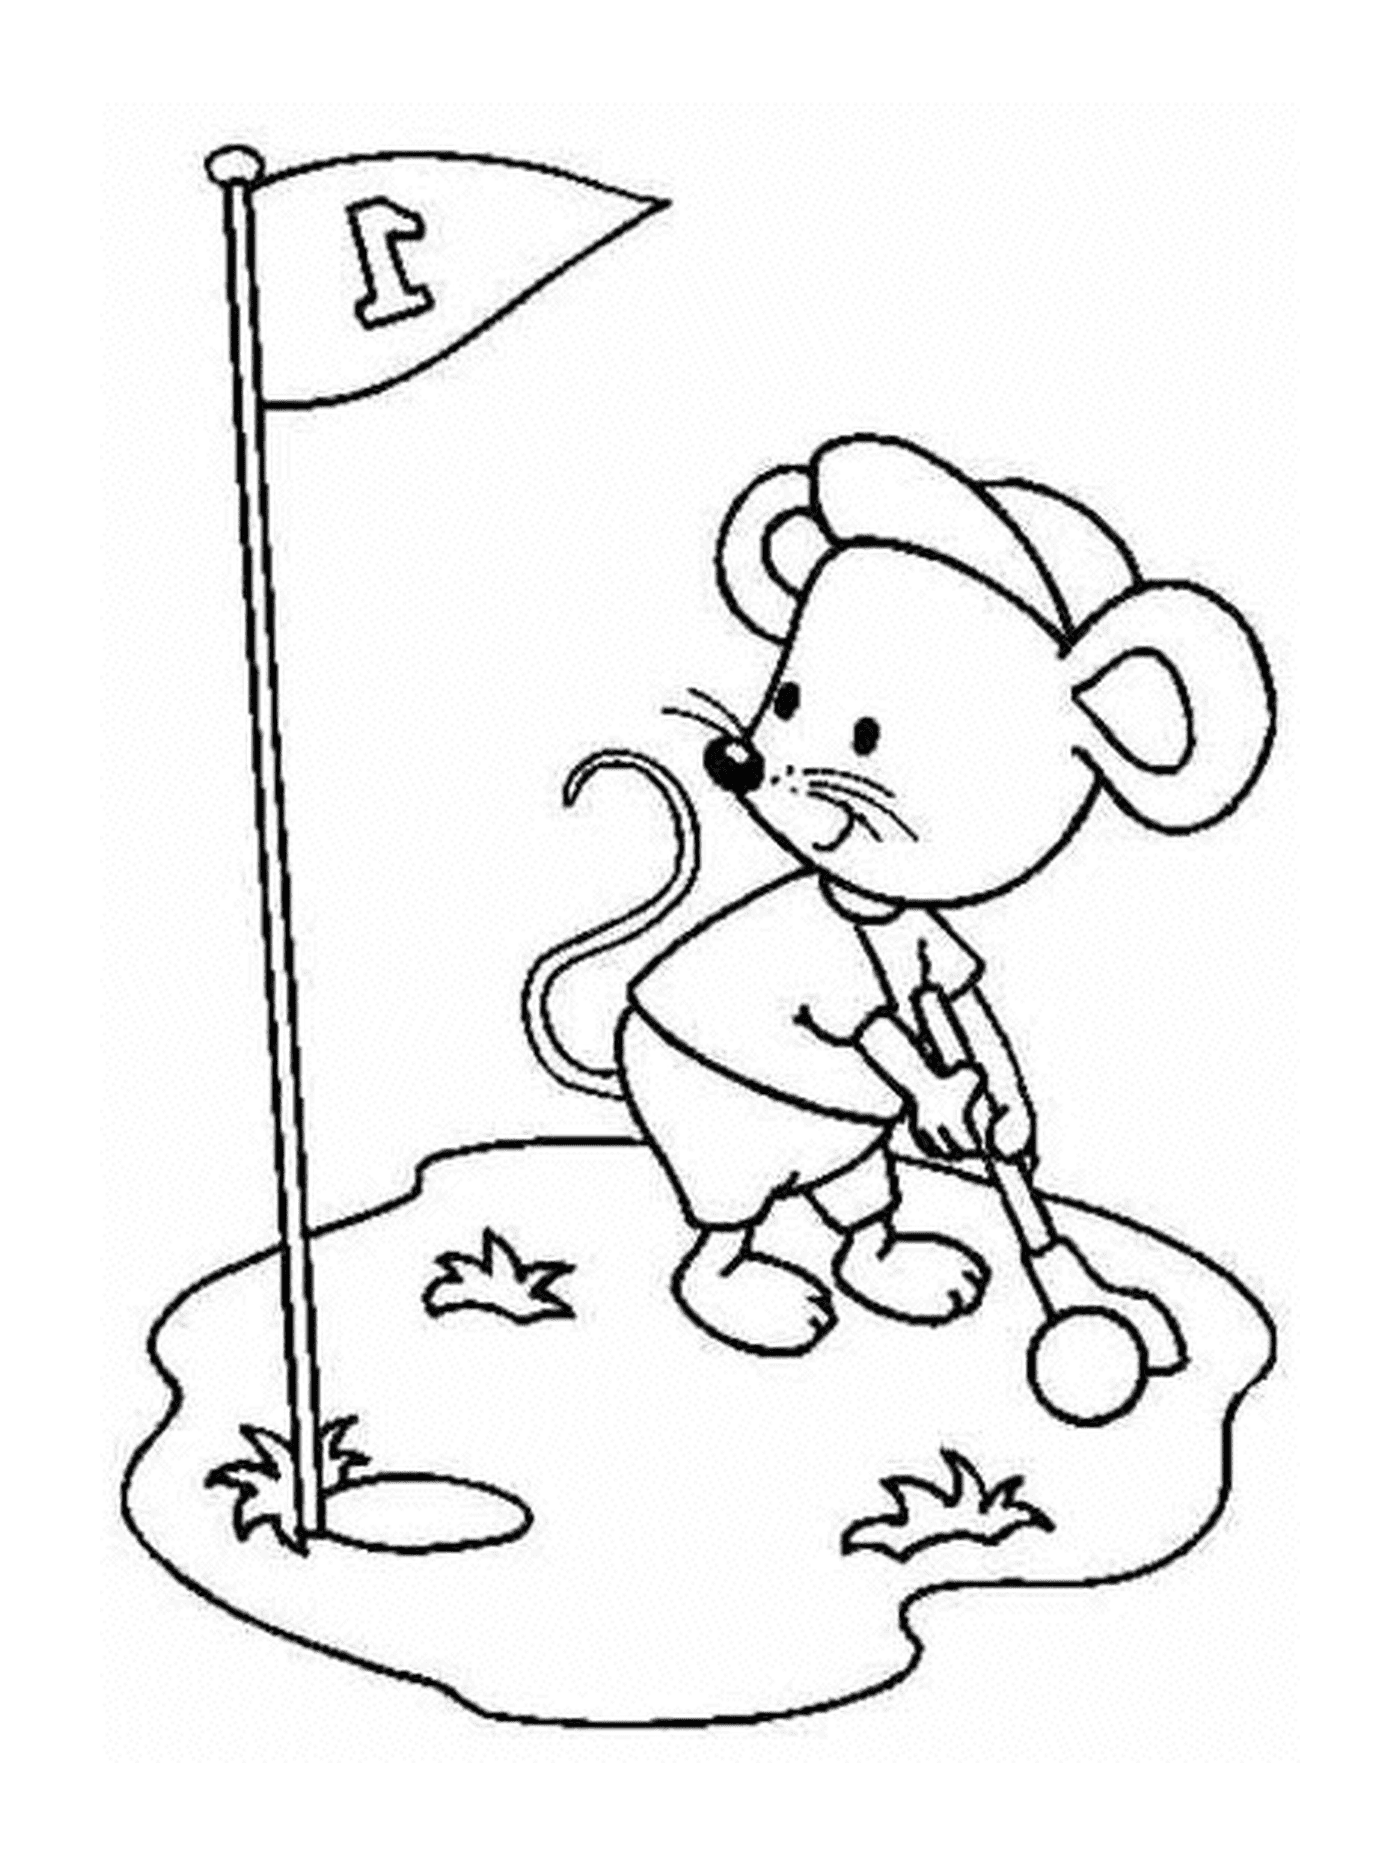  Мышь играет в гольф 